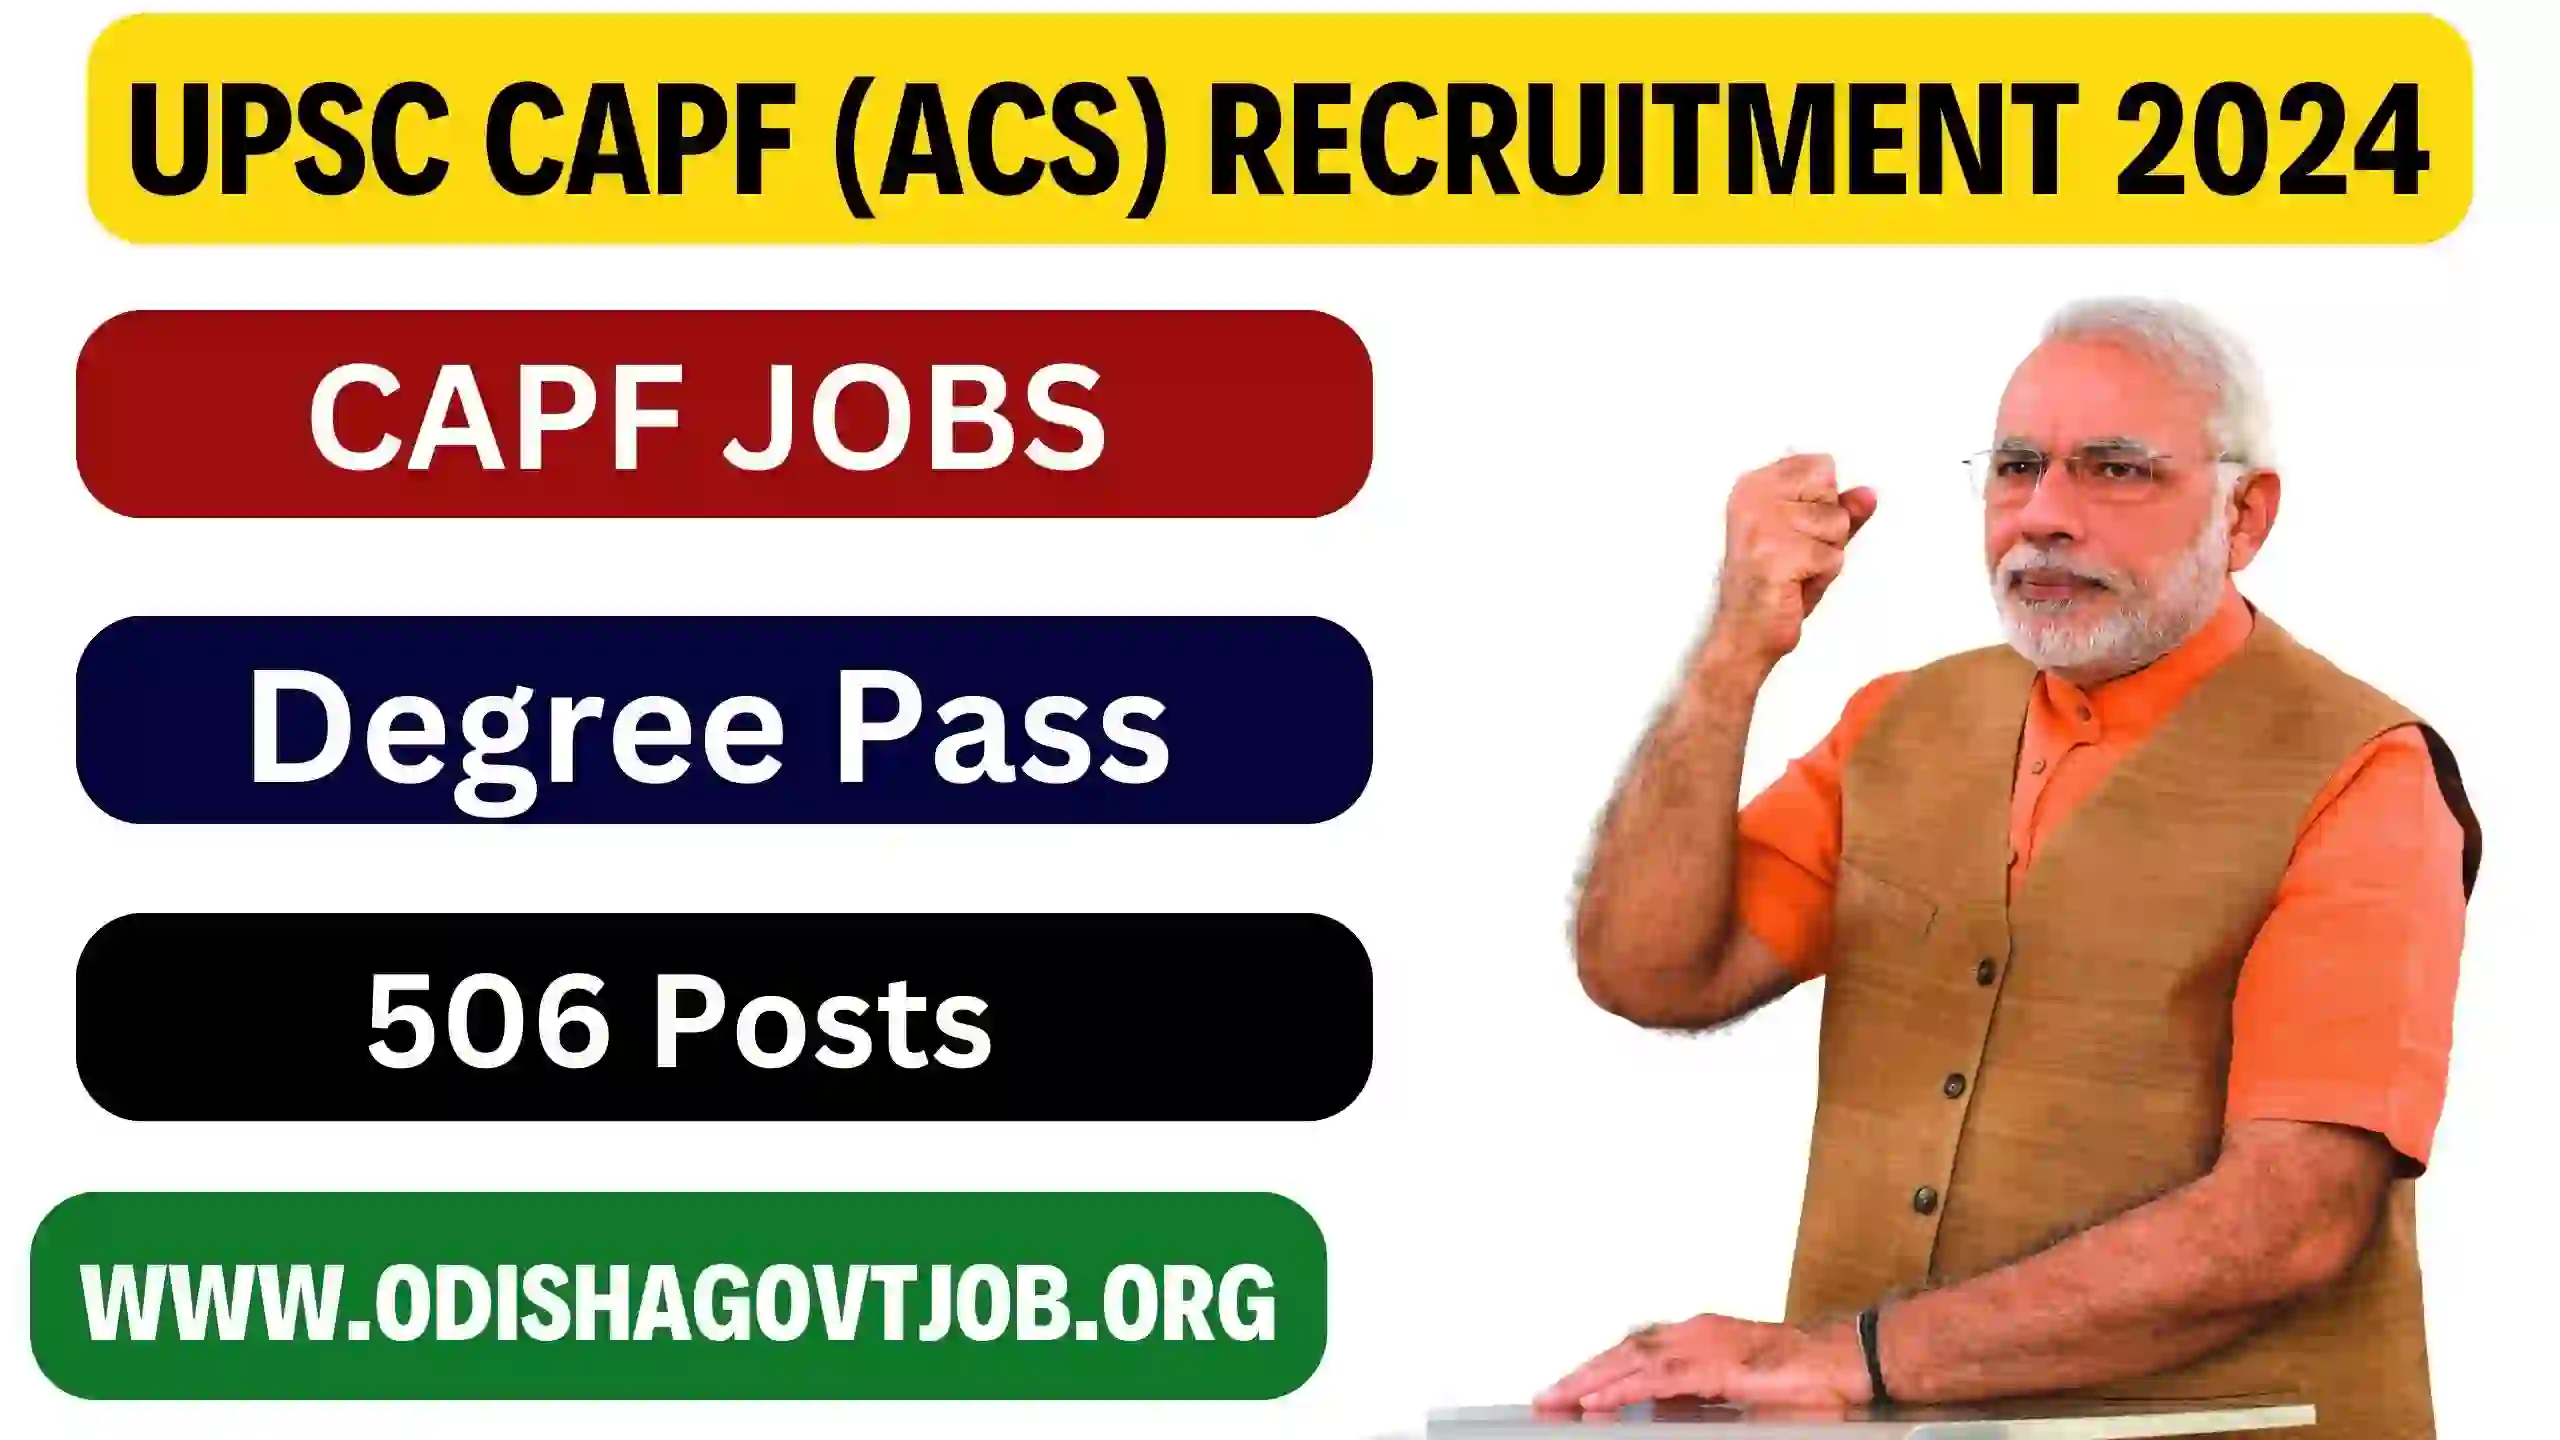 UPSC CAPF (ACs) Recruitment 2024